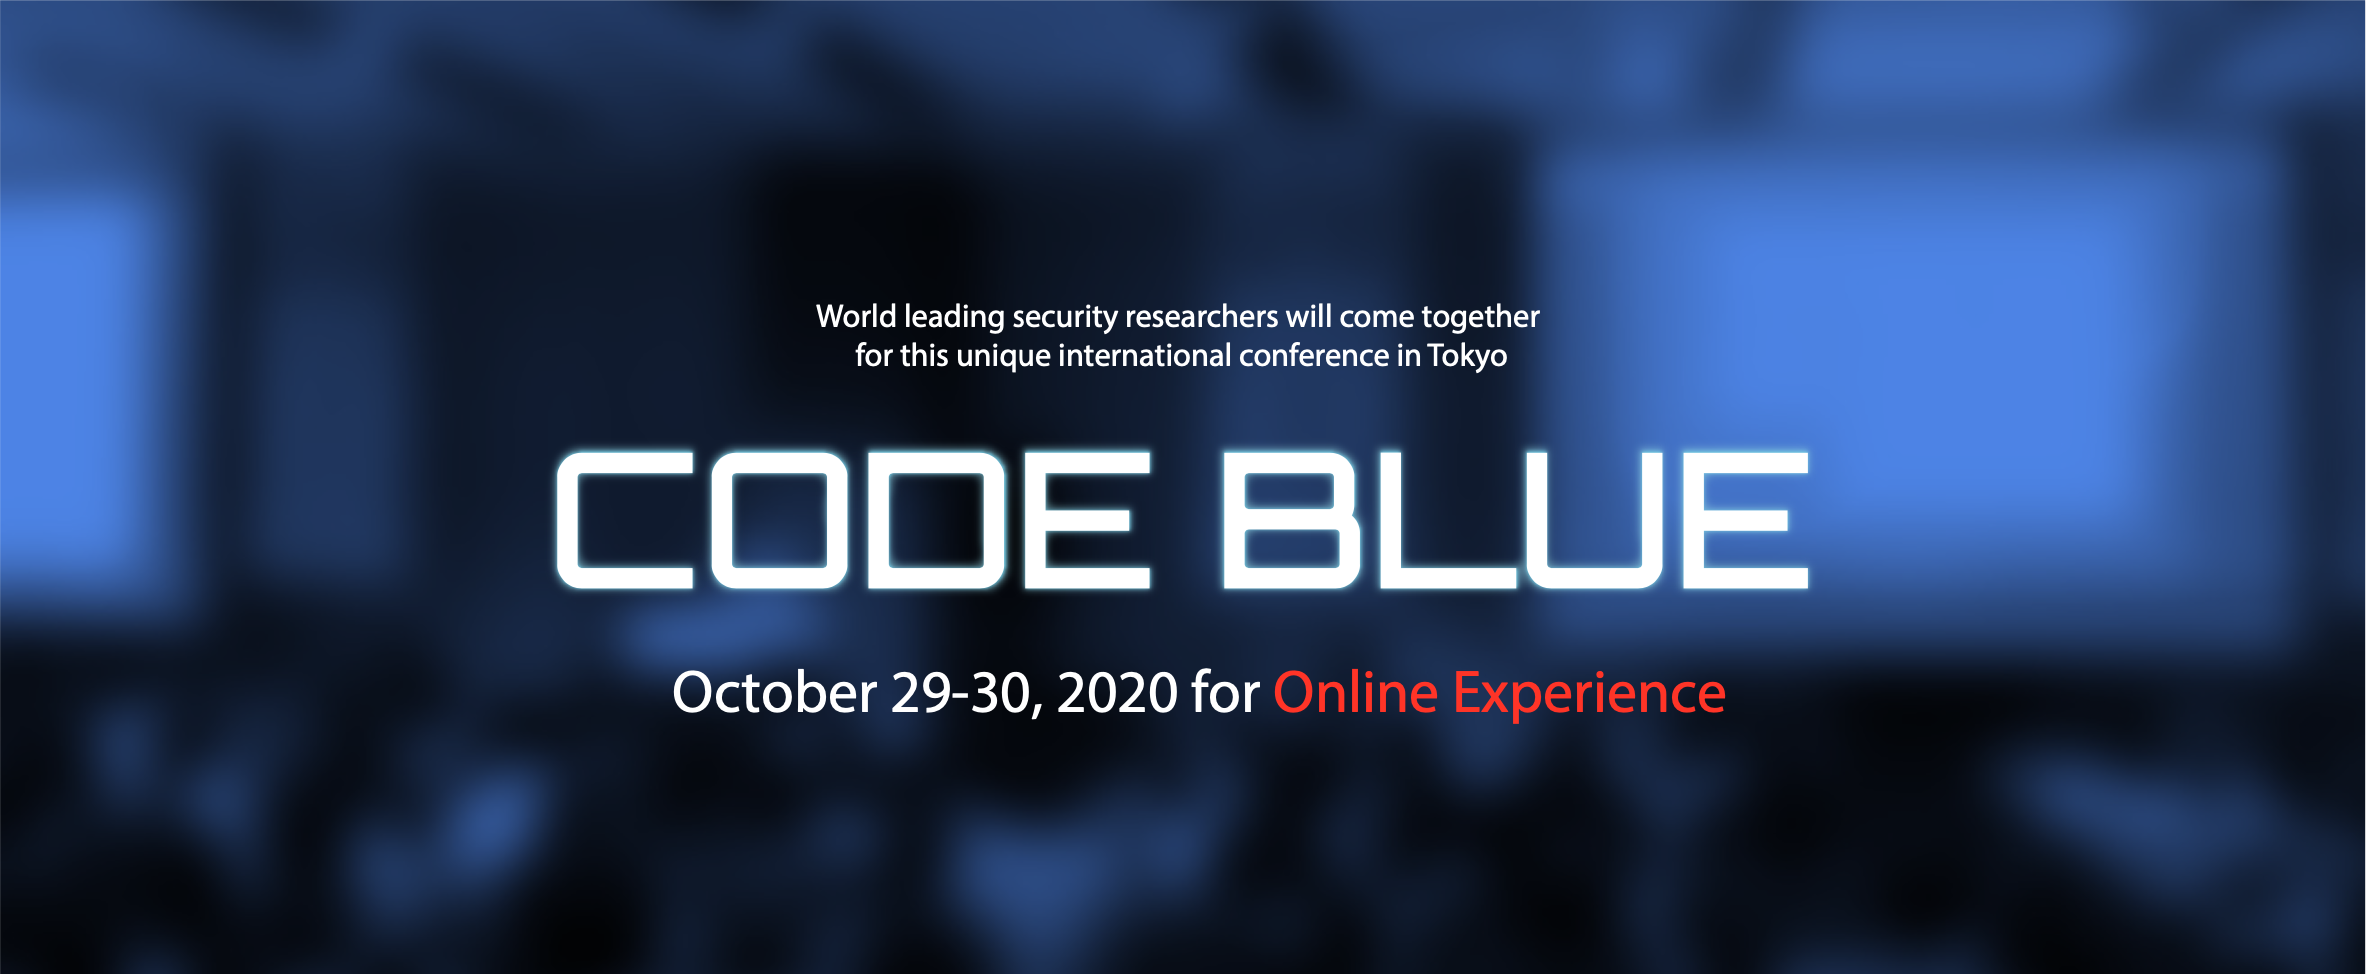 [プレスリリース] CODE BLUE 2020@TOKYO にオフィシャルスポンサーとして参画